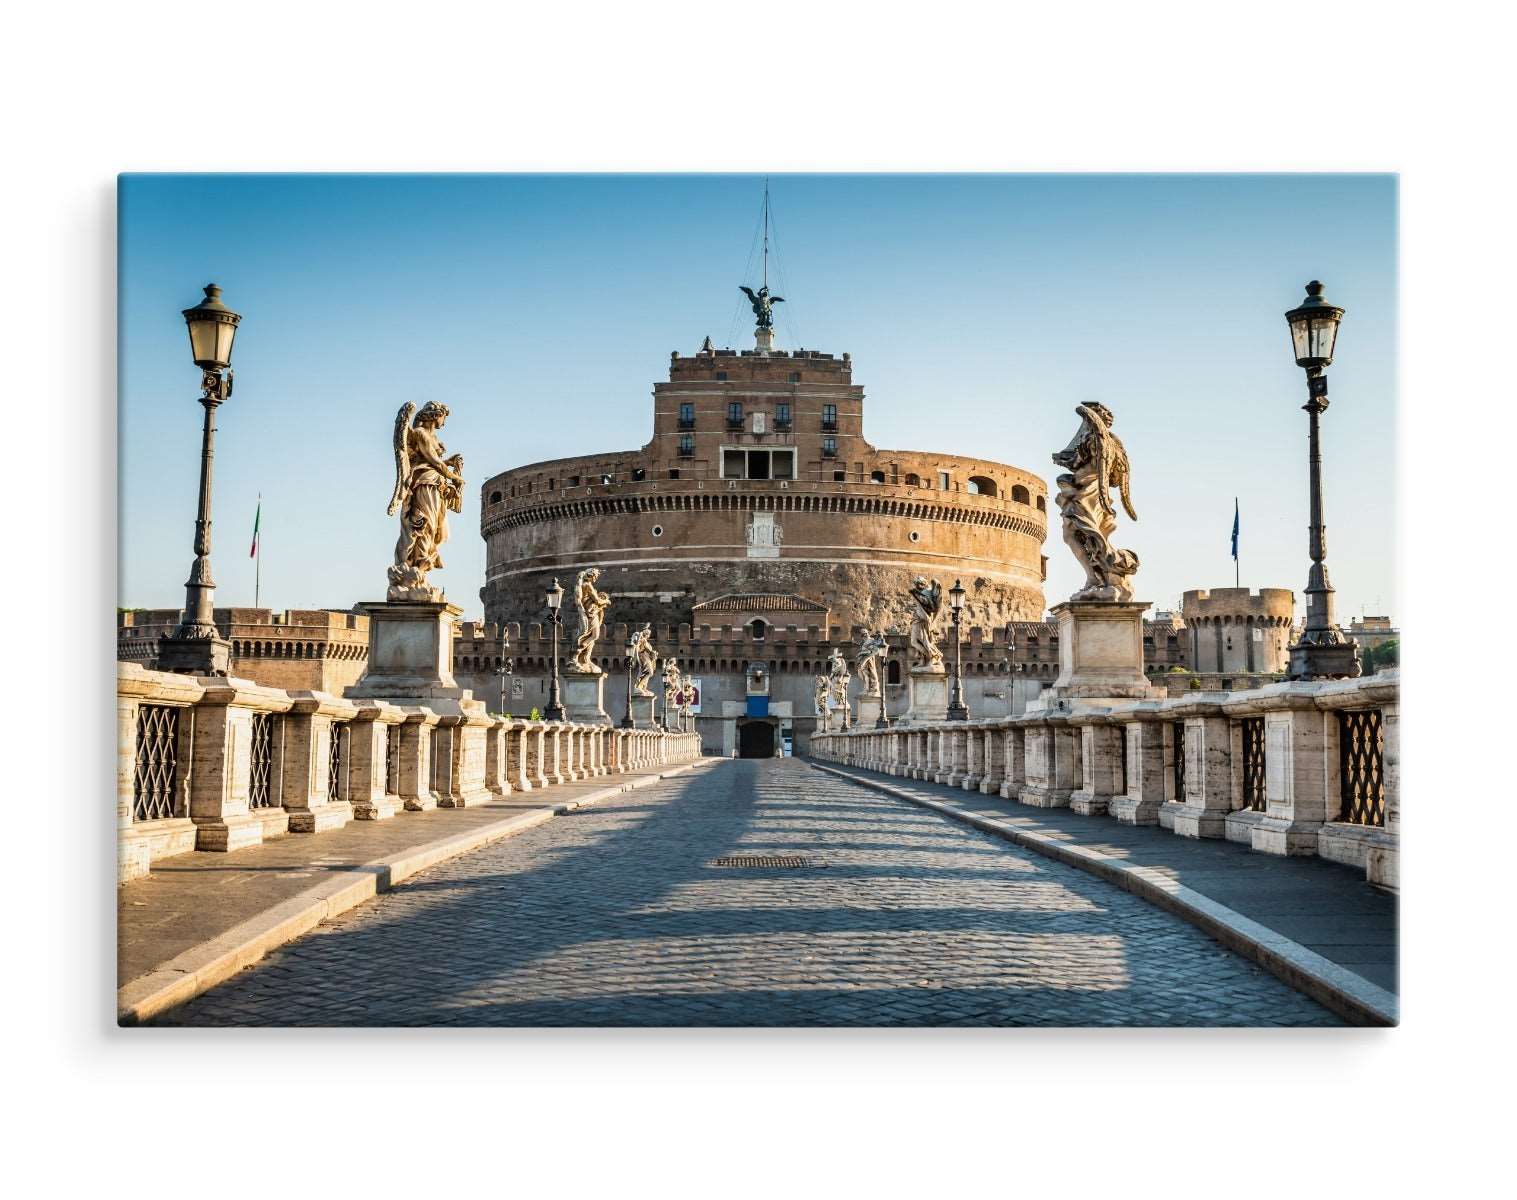 3d-visning av slottet st. angelo i roma